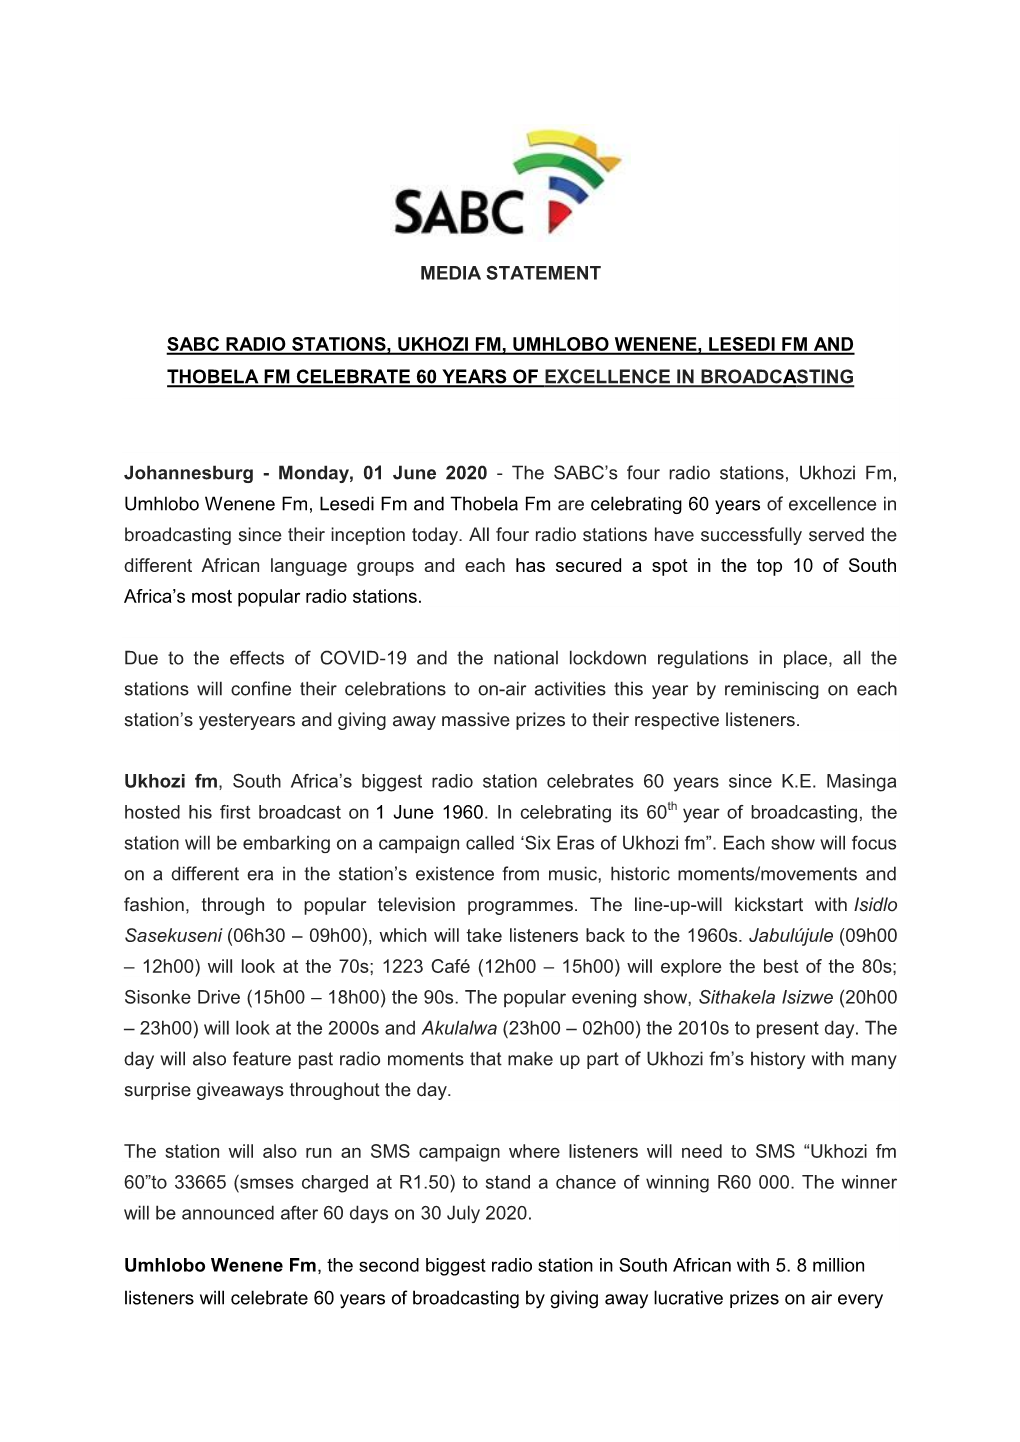 Sabc Radio Stations, Ukhozi Fm, Umhlobo Wenene, Lesedi Fm and Thobela Fm Celebrate 60 Years of Excellence in Broadcasting